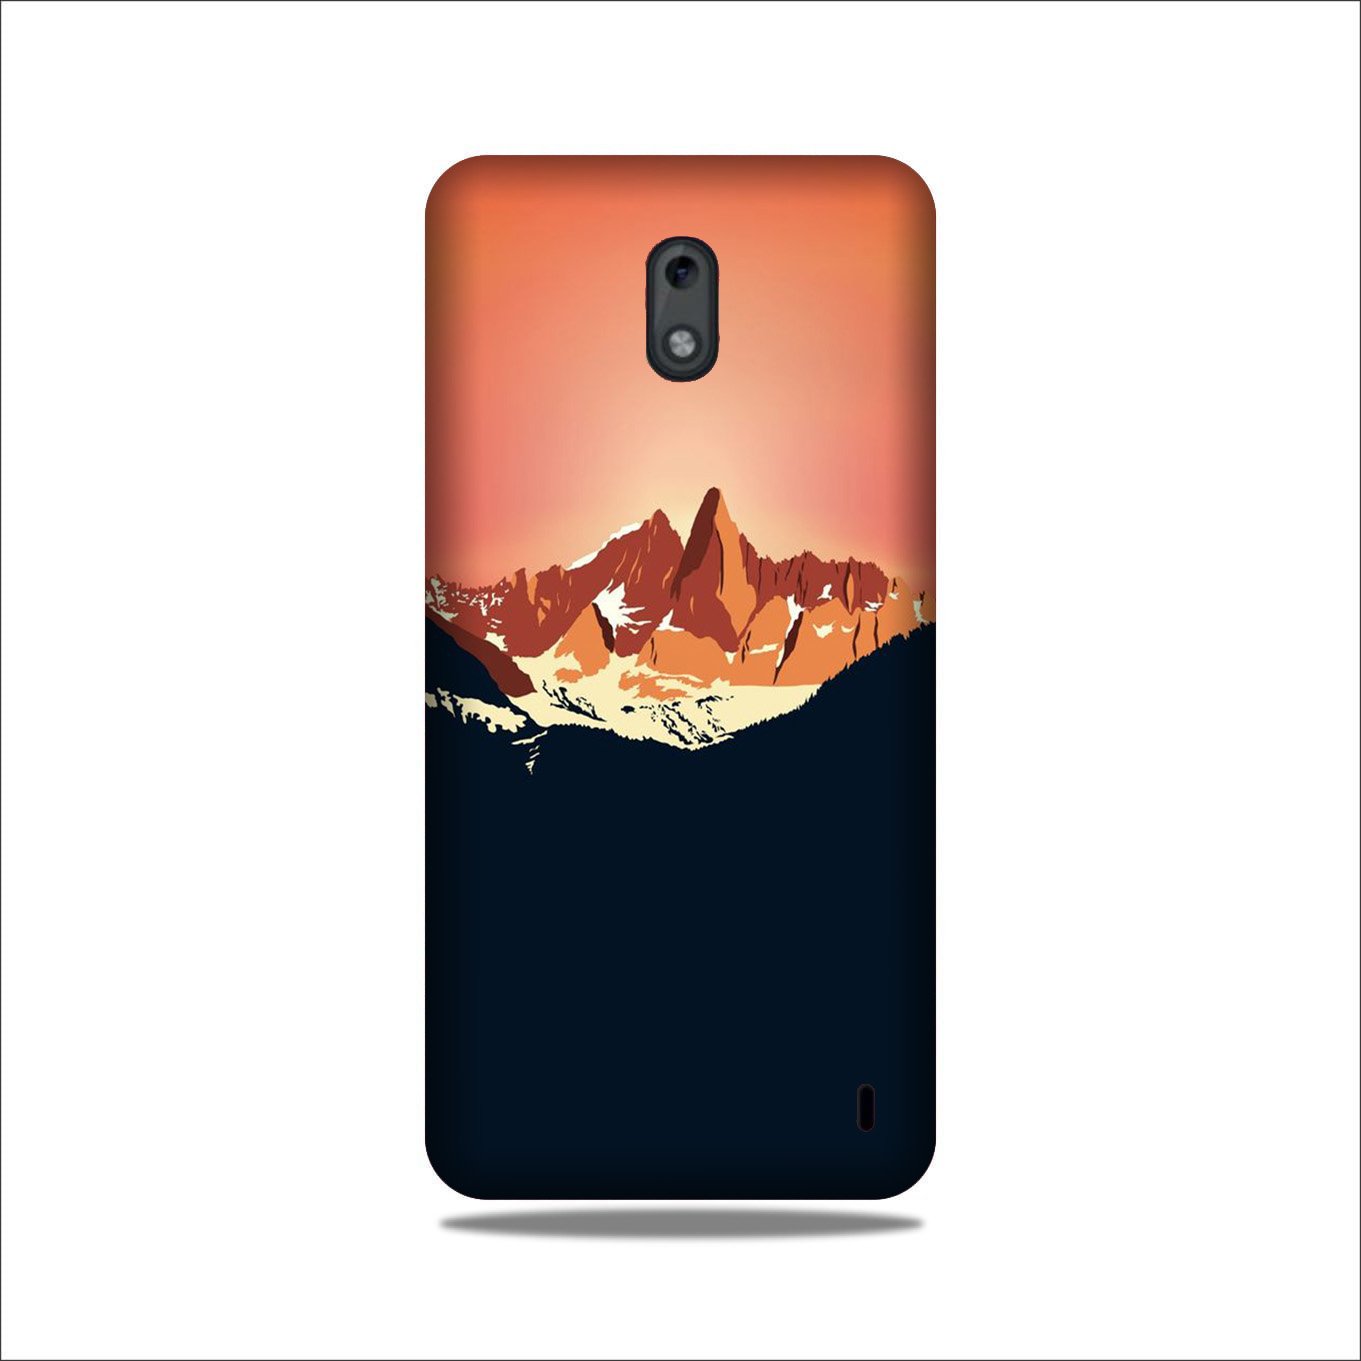 Mountains Case for Nokia 2.2 (Design No. 227)